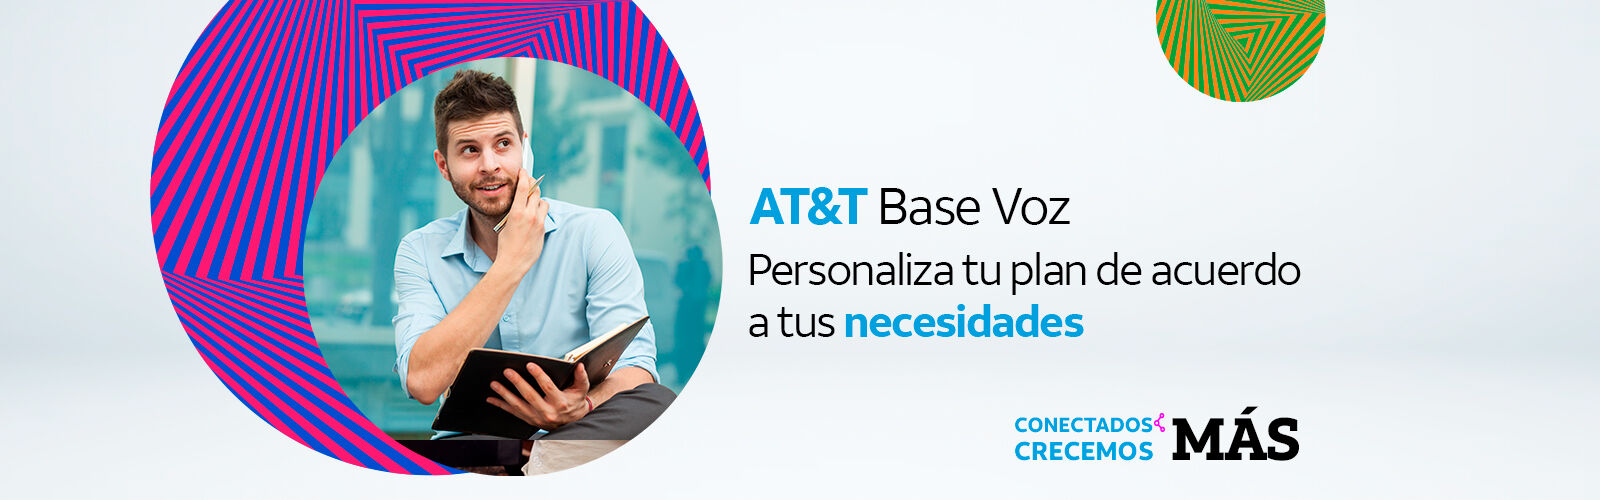 AT&T Base Voz